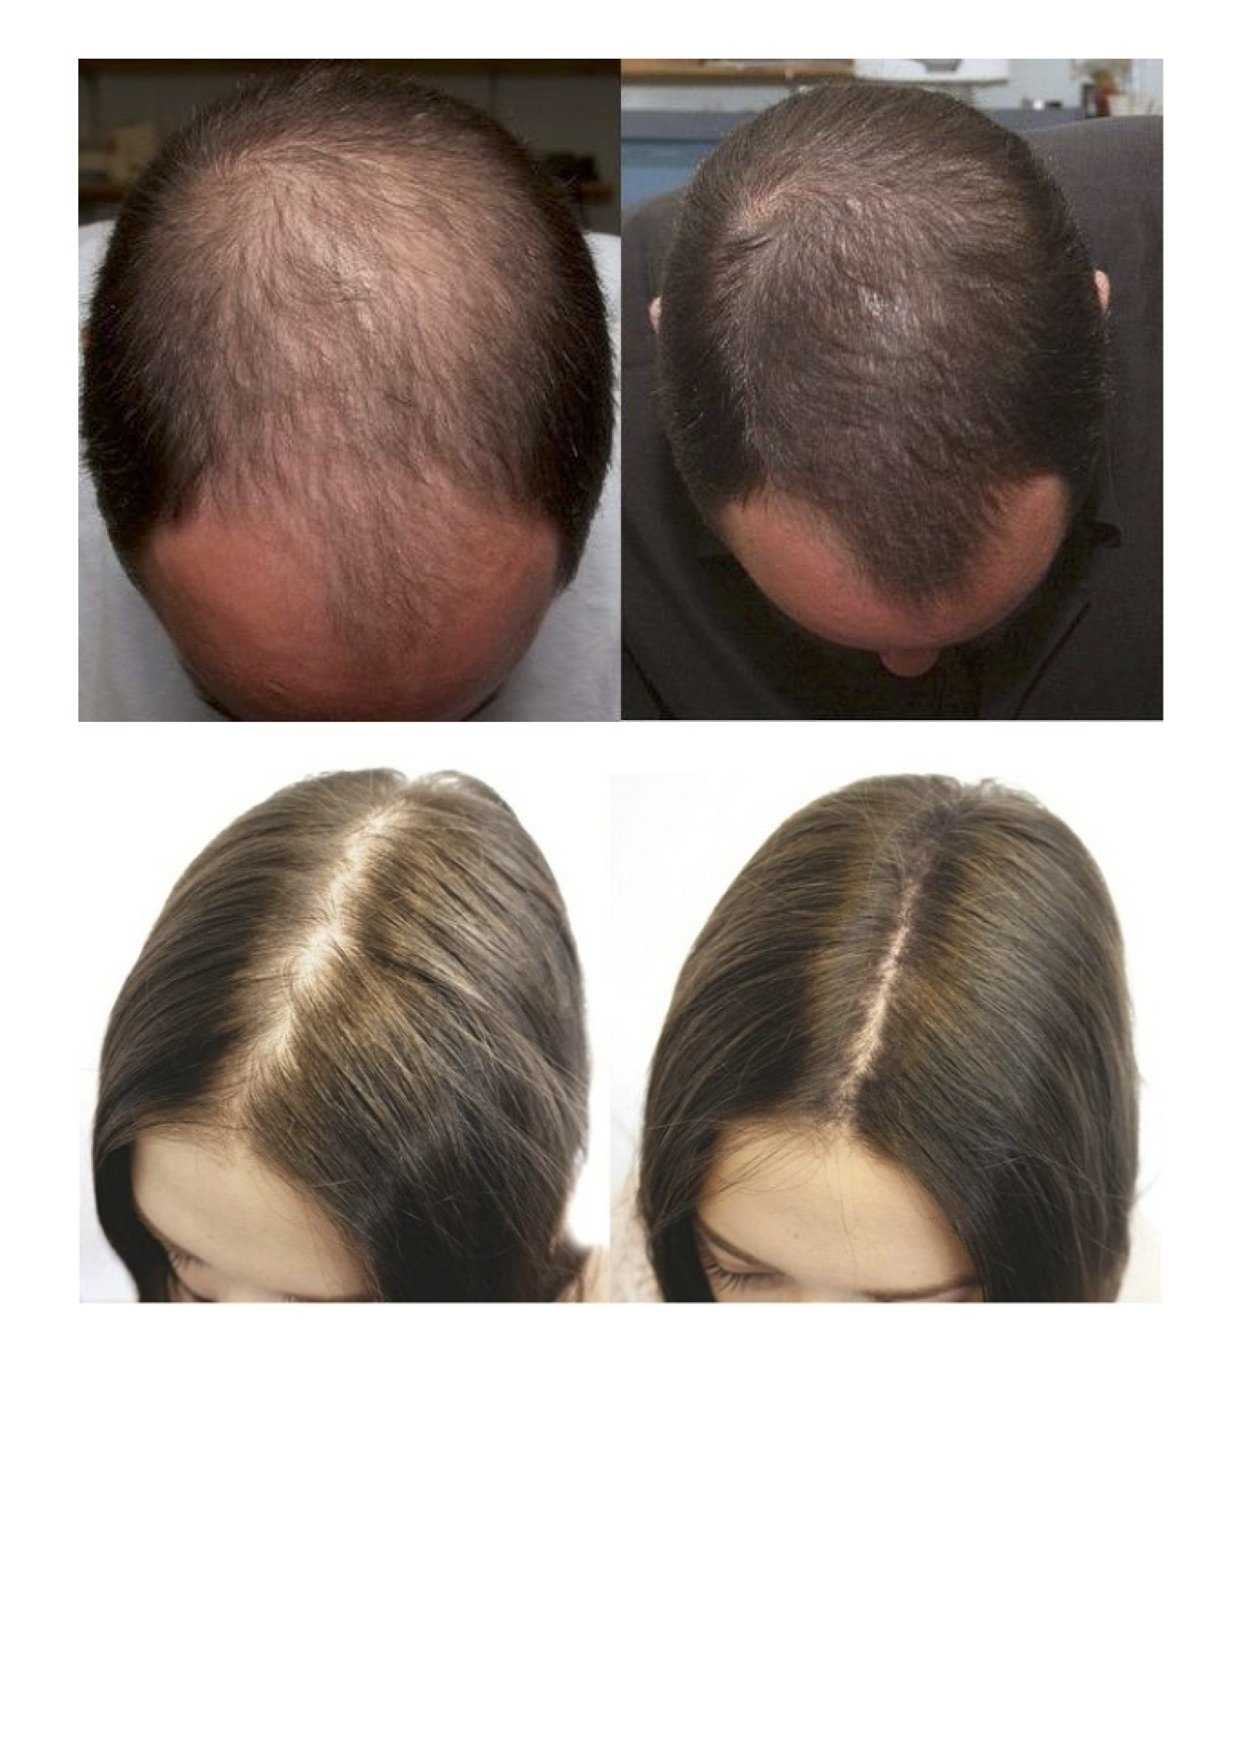 Сыворотка andrea hair growth essence (андреа) для роста волос: инструкция по применению и эффект от использования